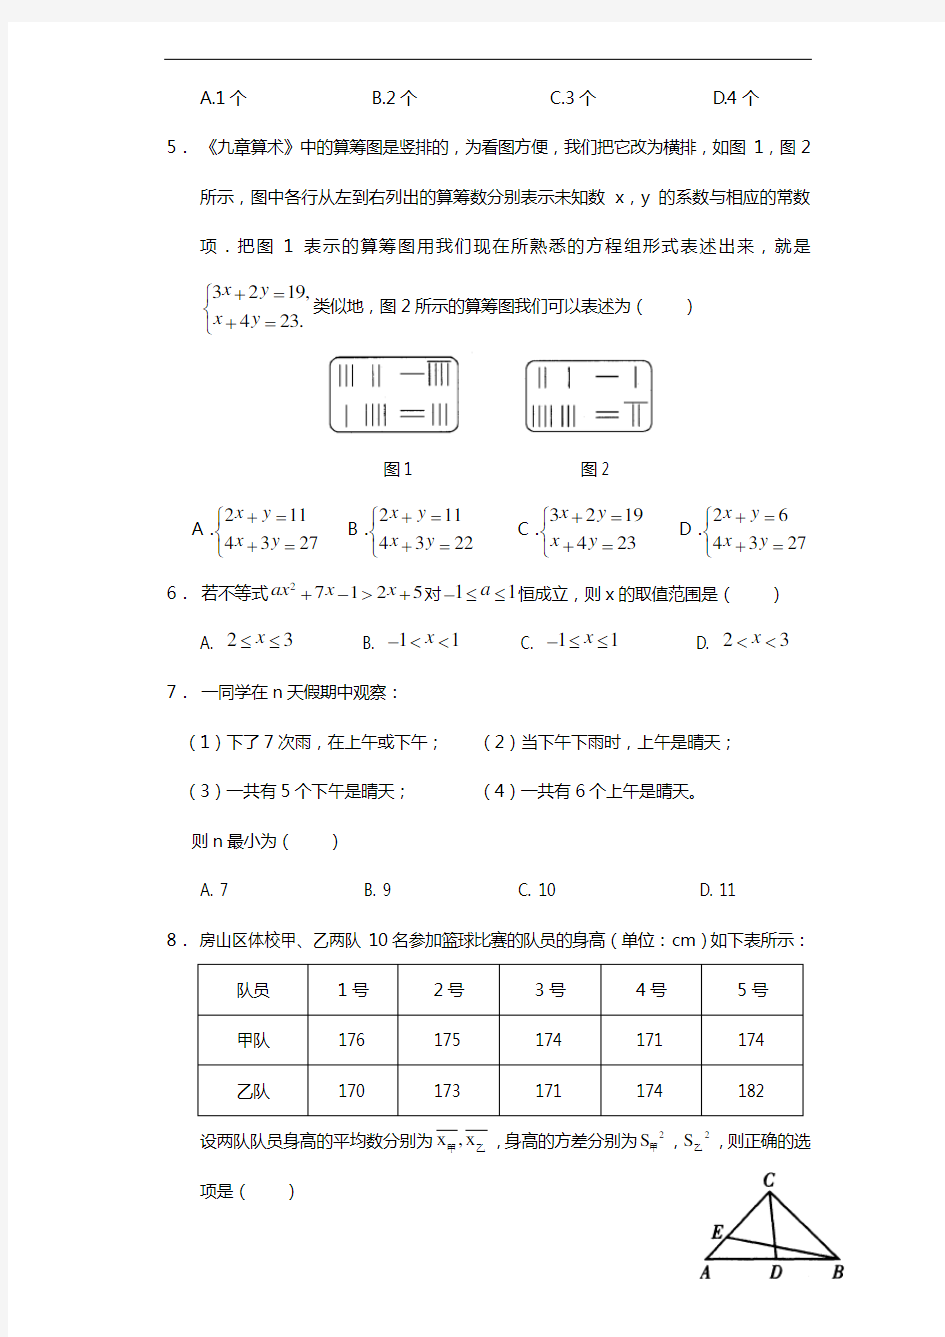 2017杭州市中考数学模拟卷(含试题(卷)分析)难度大